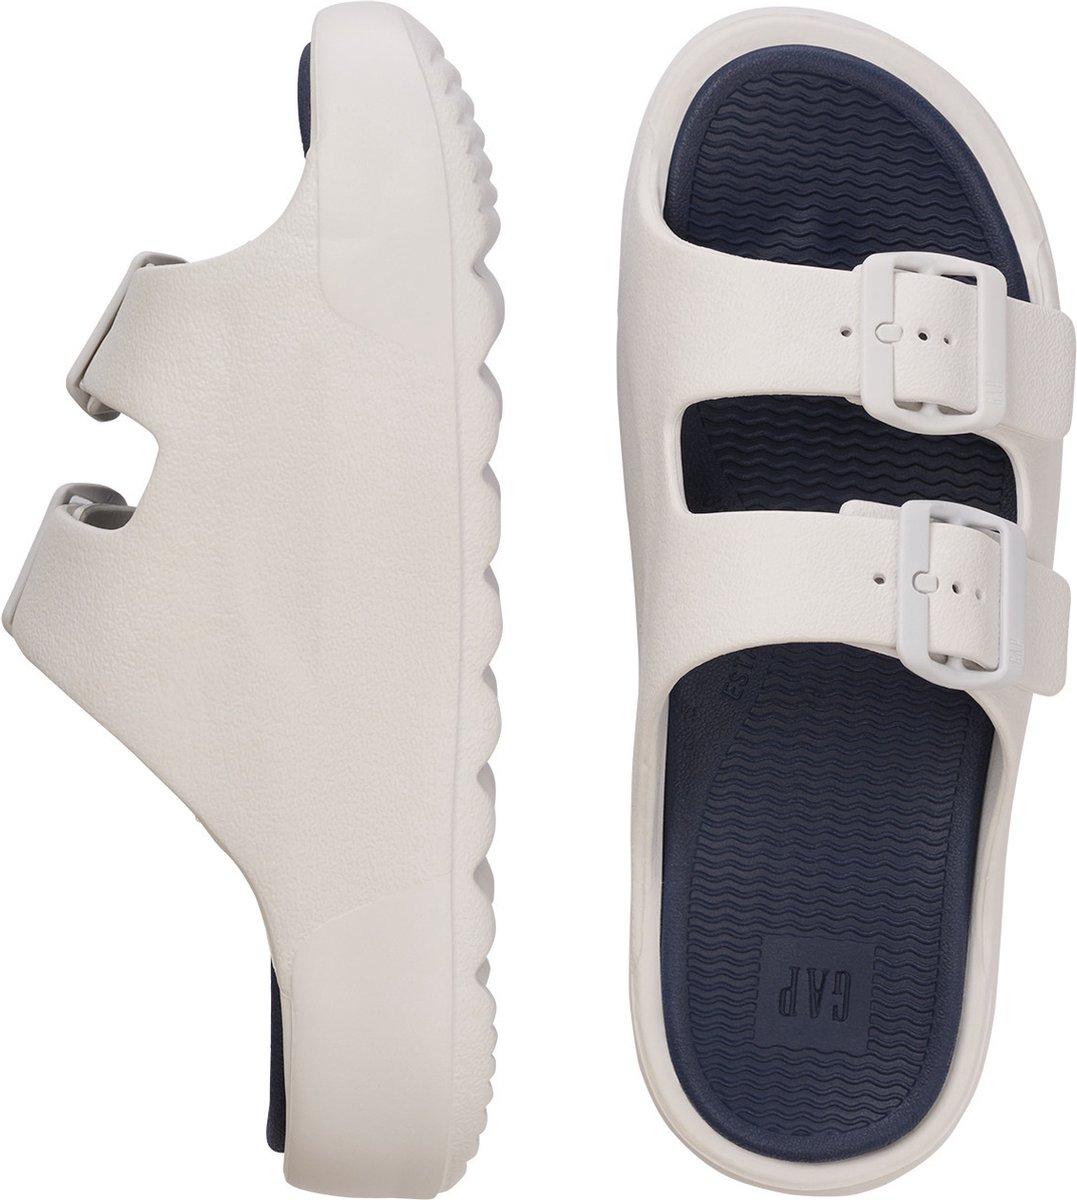 Gap - Flip-Flop/Slide - Female - White - 38 - Slippers